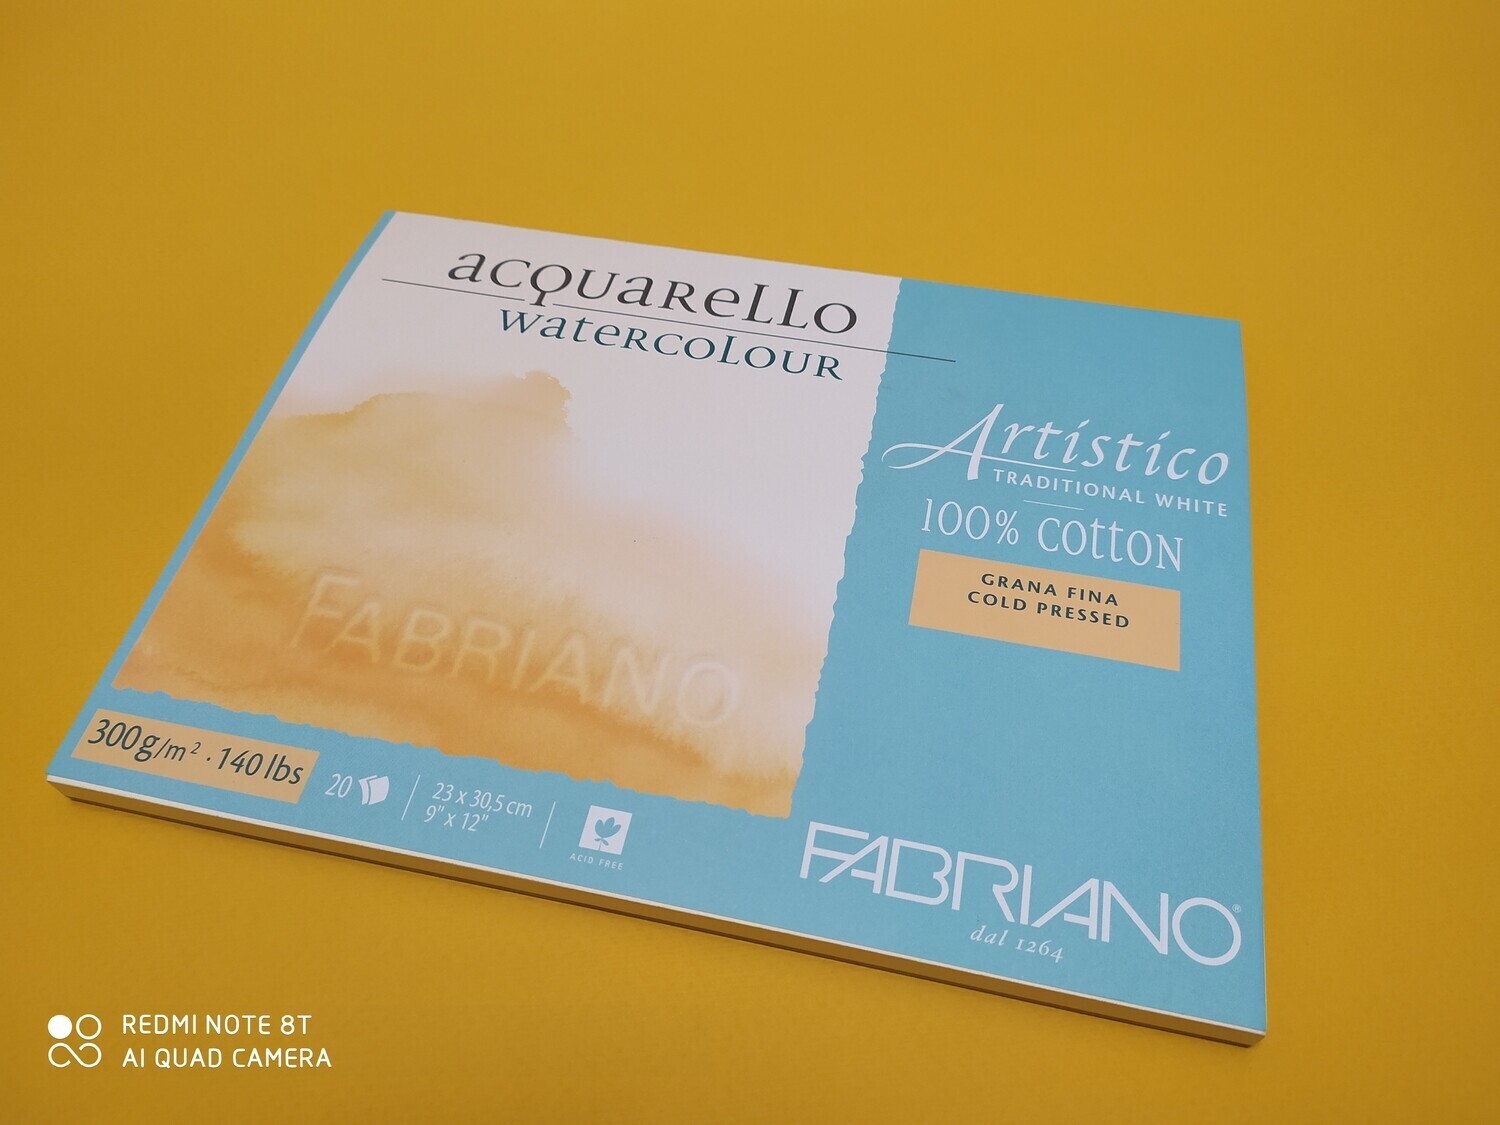 Album Fabriano Watercolour 100% grana fine, Formato: 12,5x18